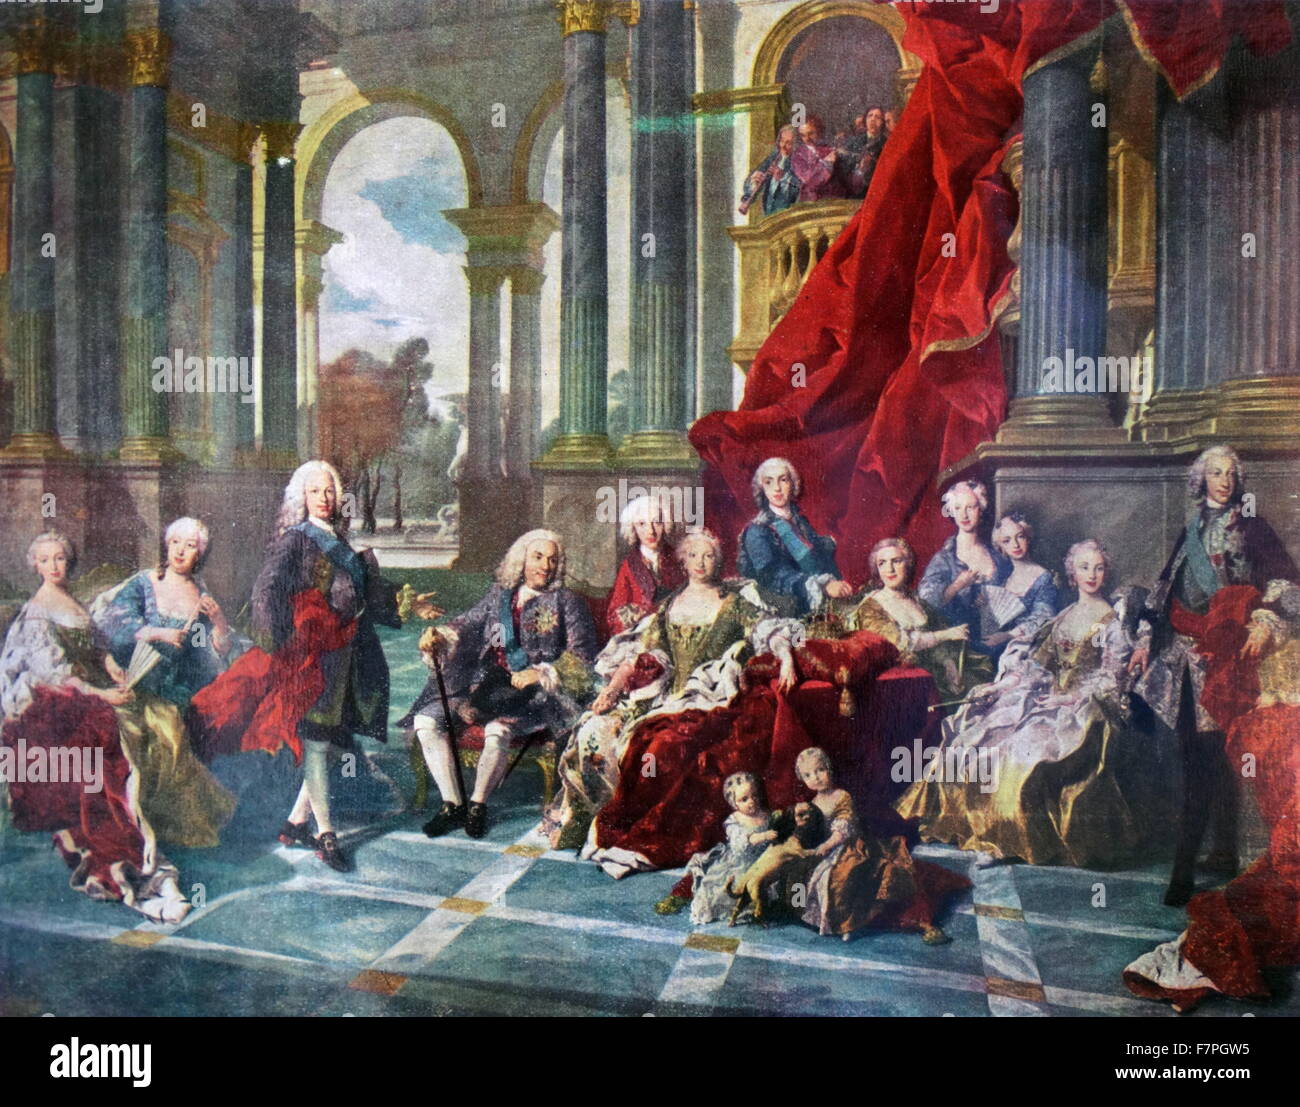 La famille de Philippe V (1743) par Louis Michel van Loo. Le roi Philippe V d'Espagne et de sa famille. Banque D'Images